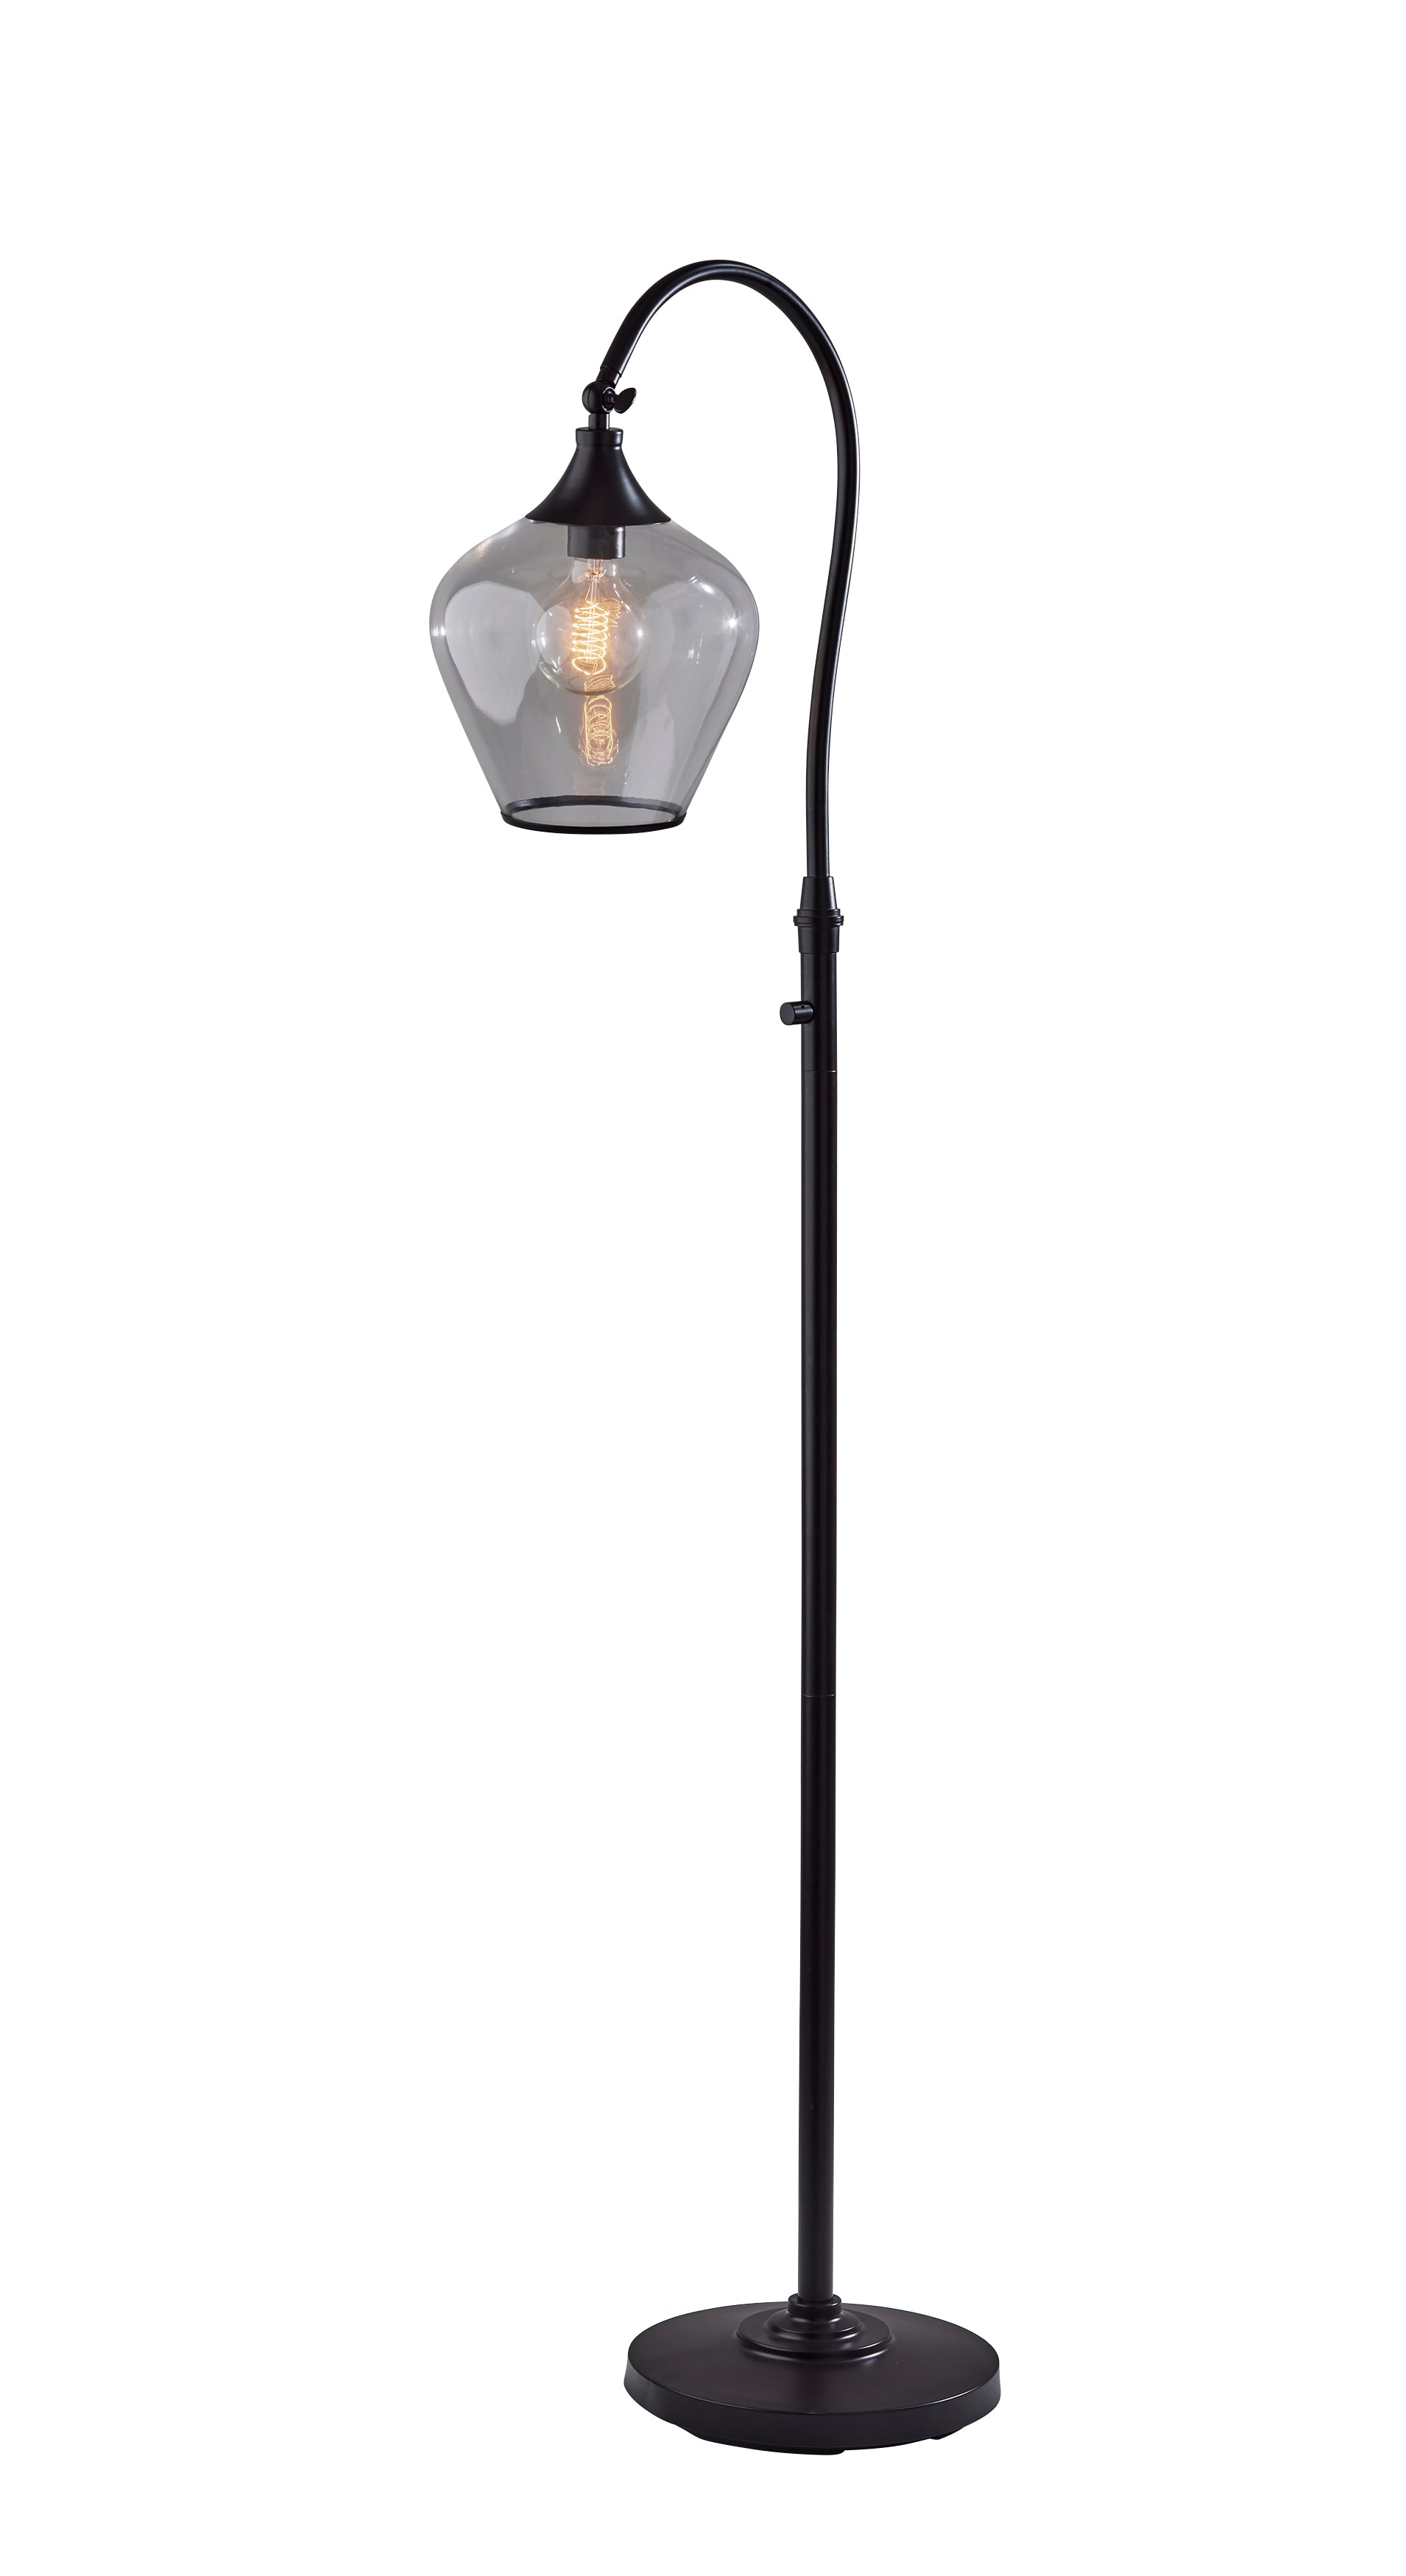 BRADFORD Lampe sur pied Bronze - 3923-26 | ADESSO